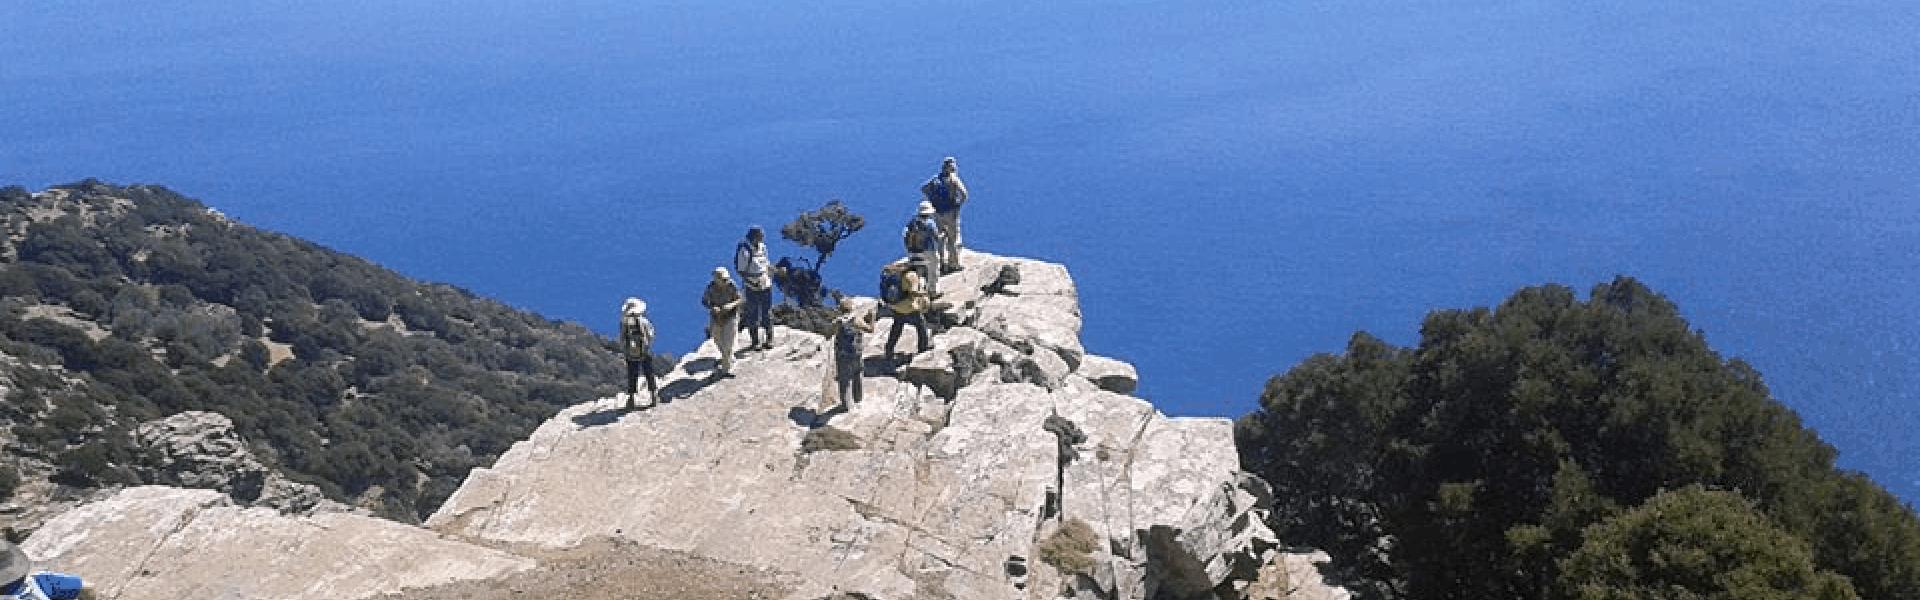 Ορειβατικός Σύλλογος Λουτρακίου - Θεματικός Τουρισμός